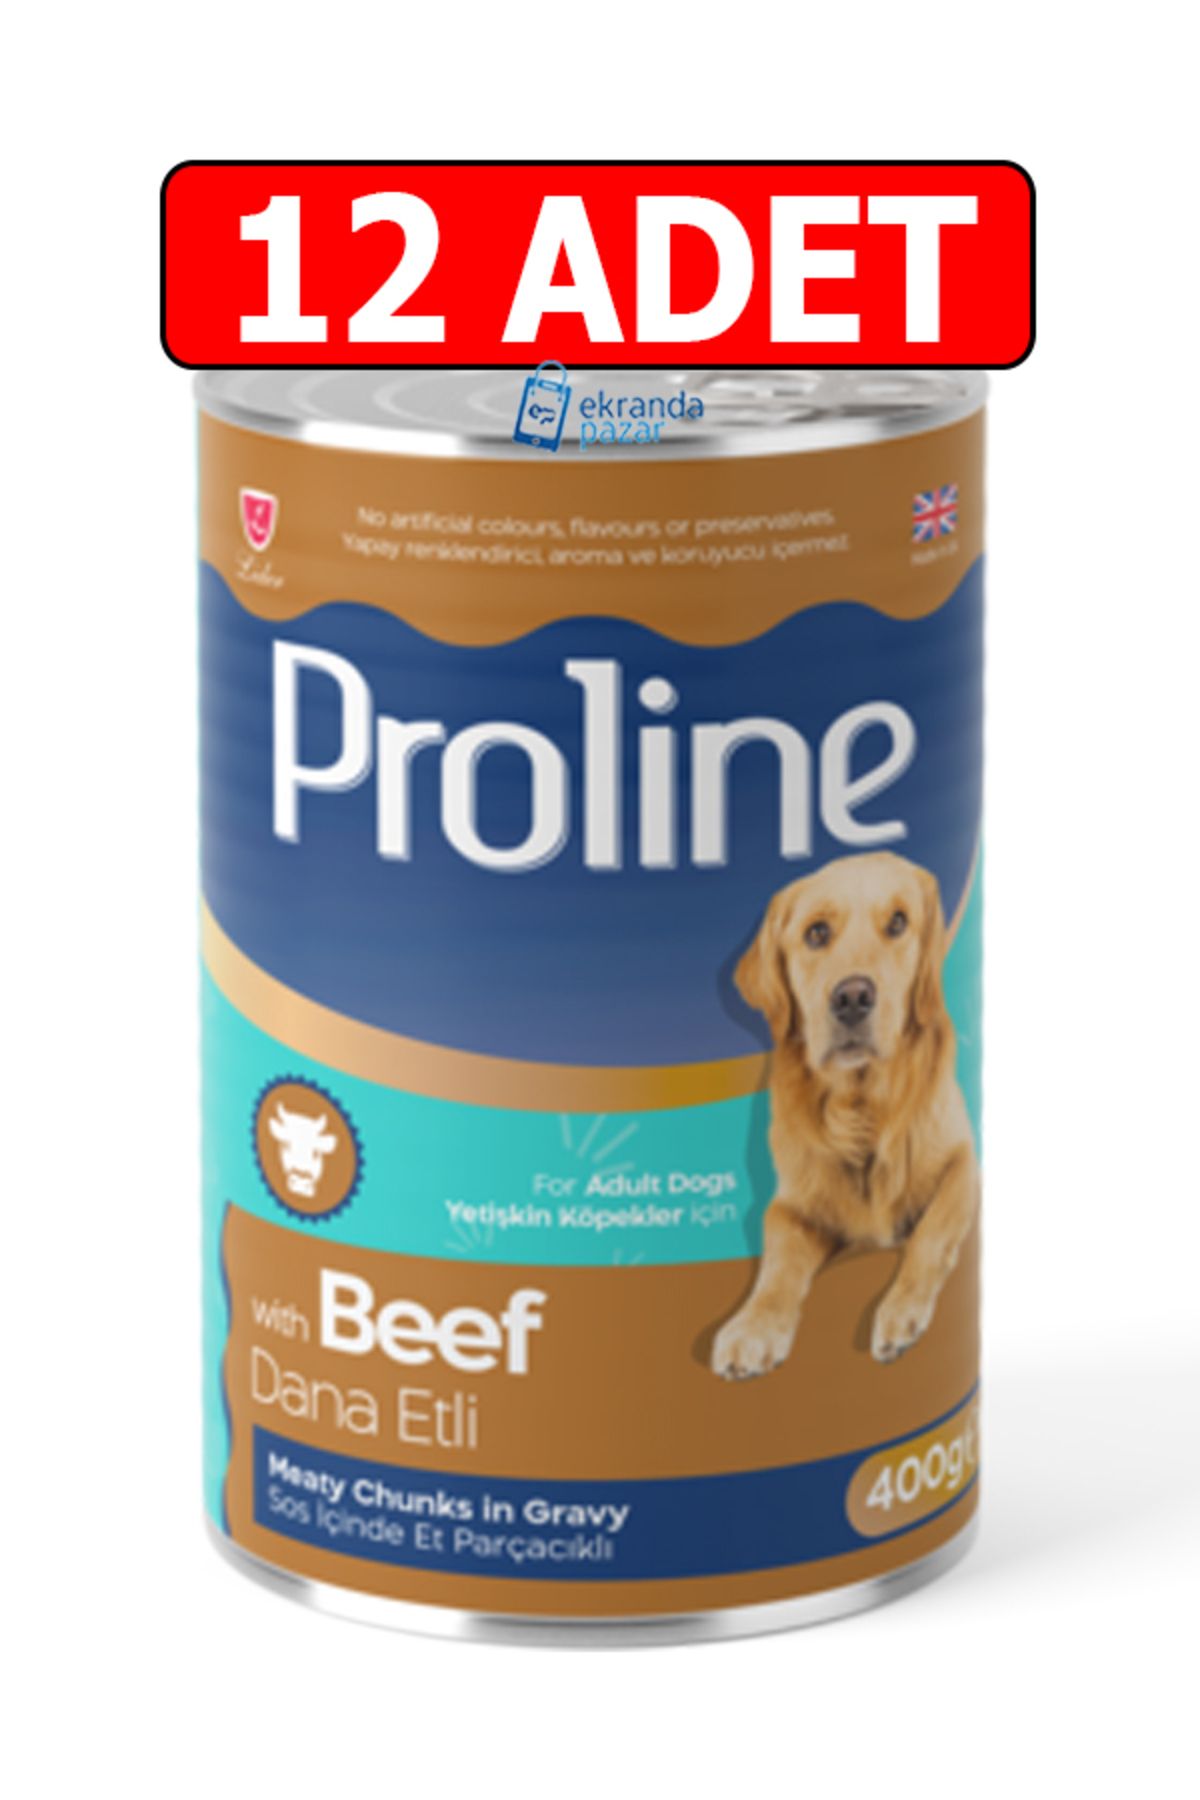 Pro Line Proline dana etli beef biftekli sos içinde et parçalı köpek konservesi 12adet 400gr köpek yaş mama